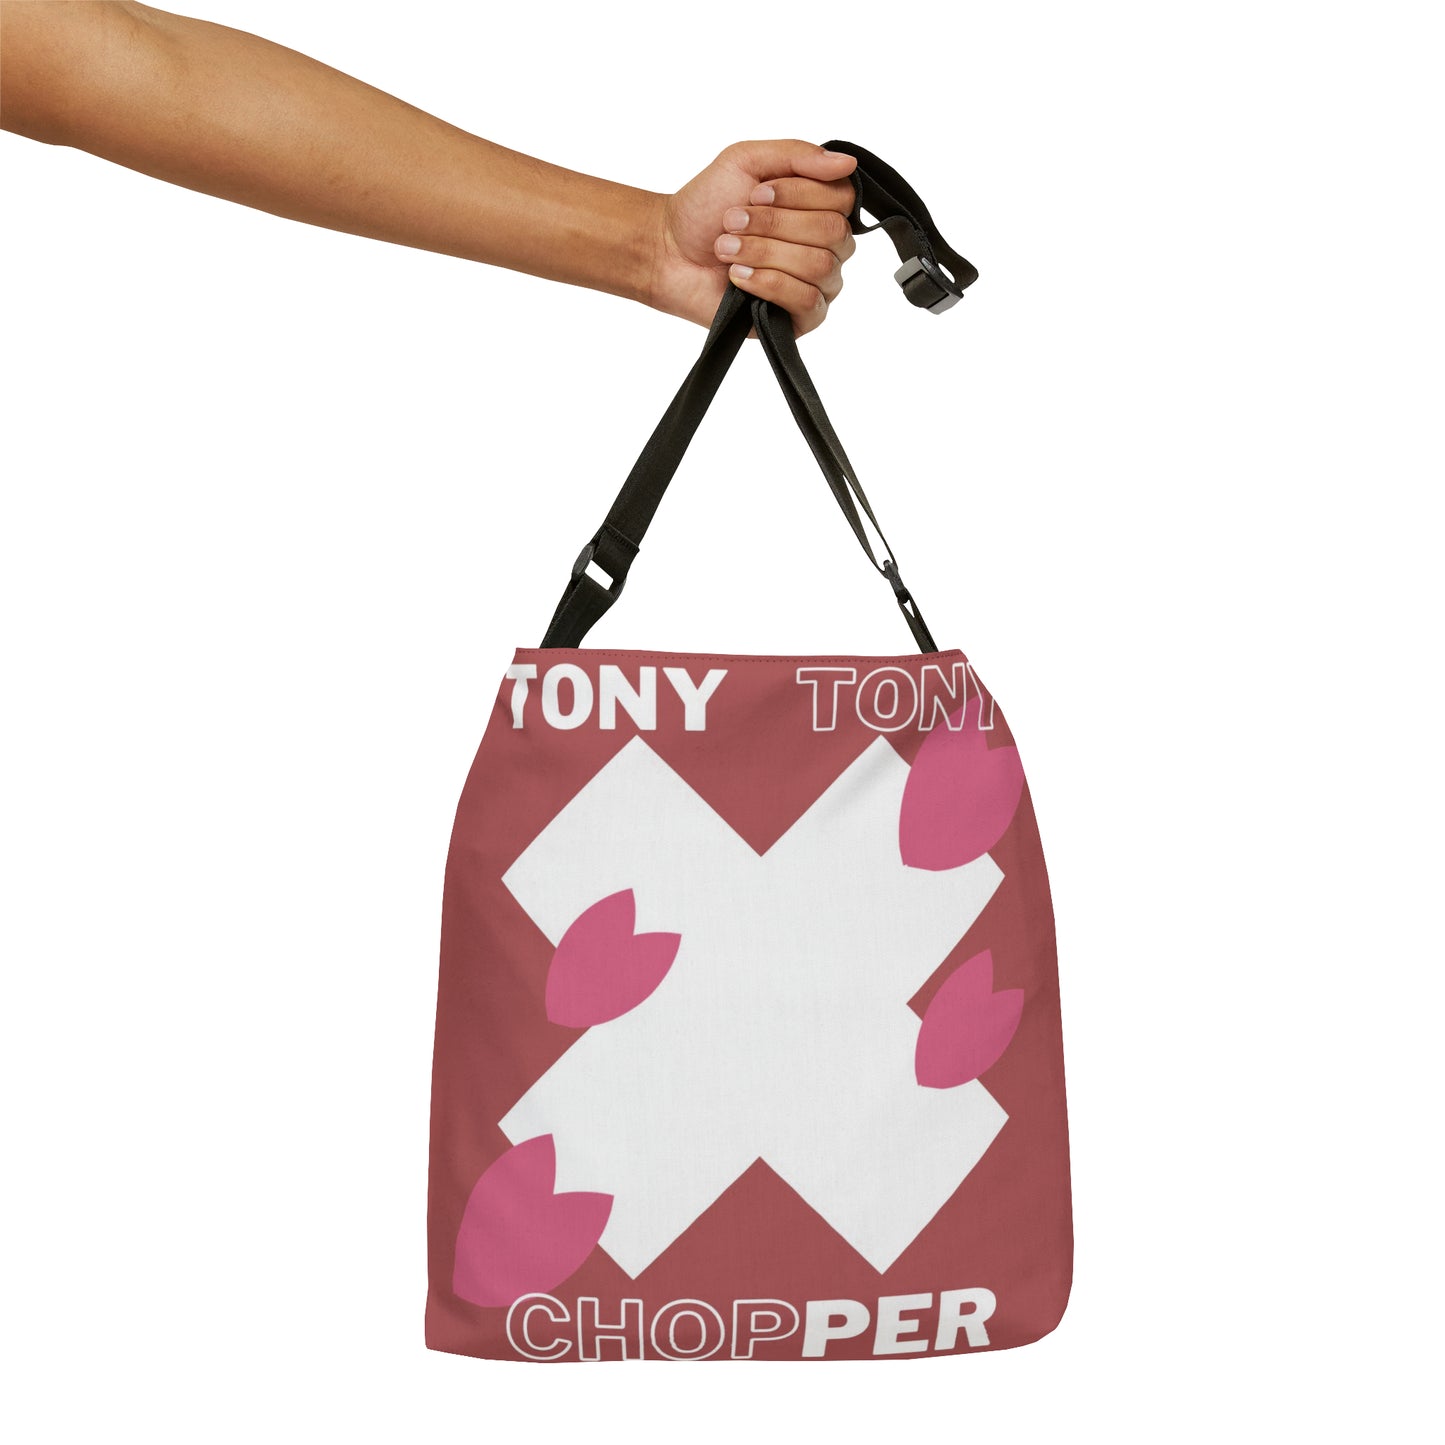 Tony Tony Adjustable Tote Bag (AOP)